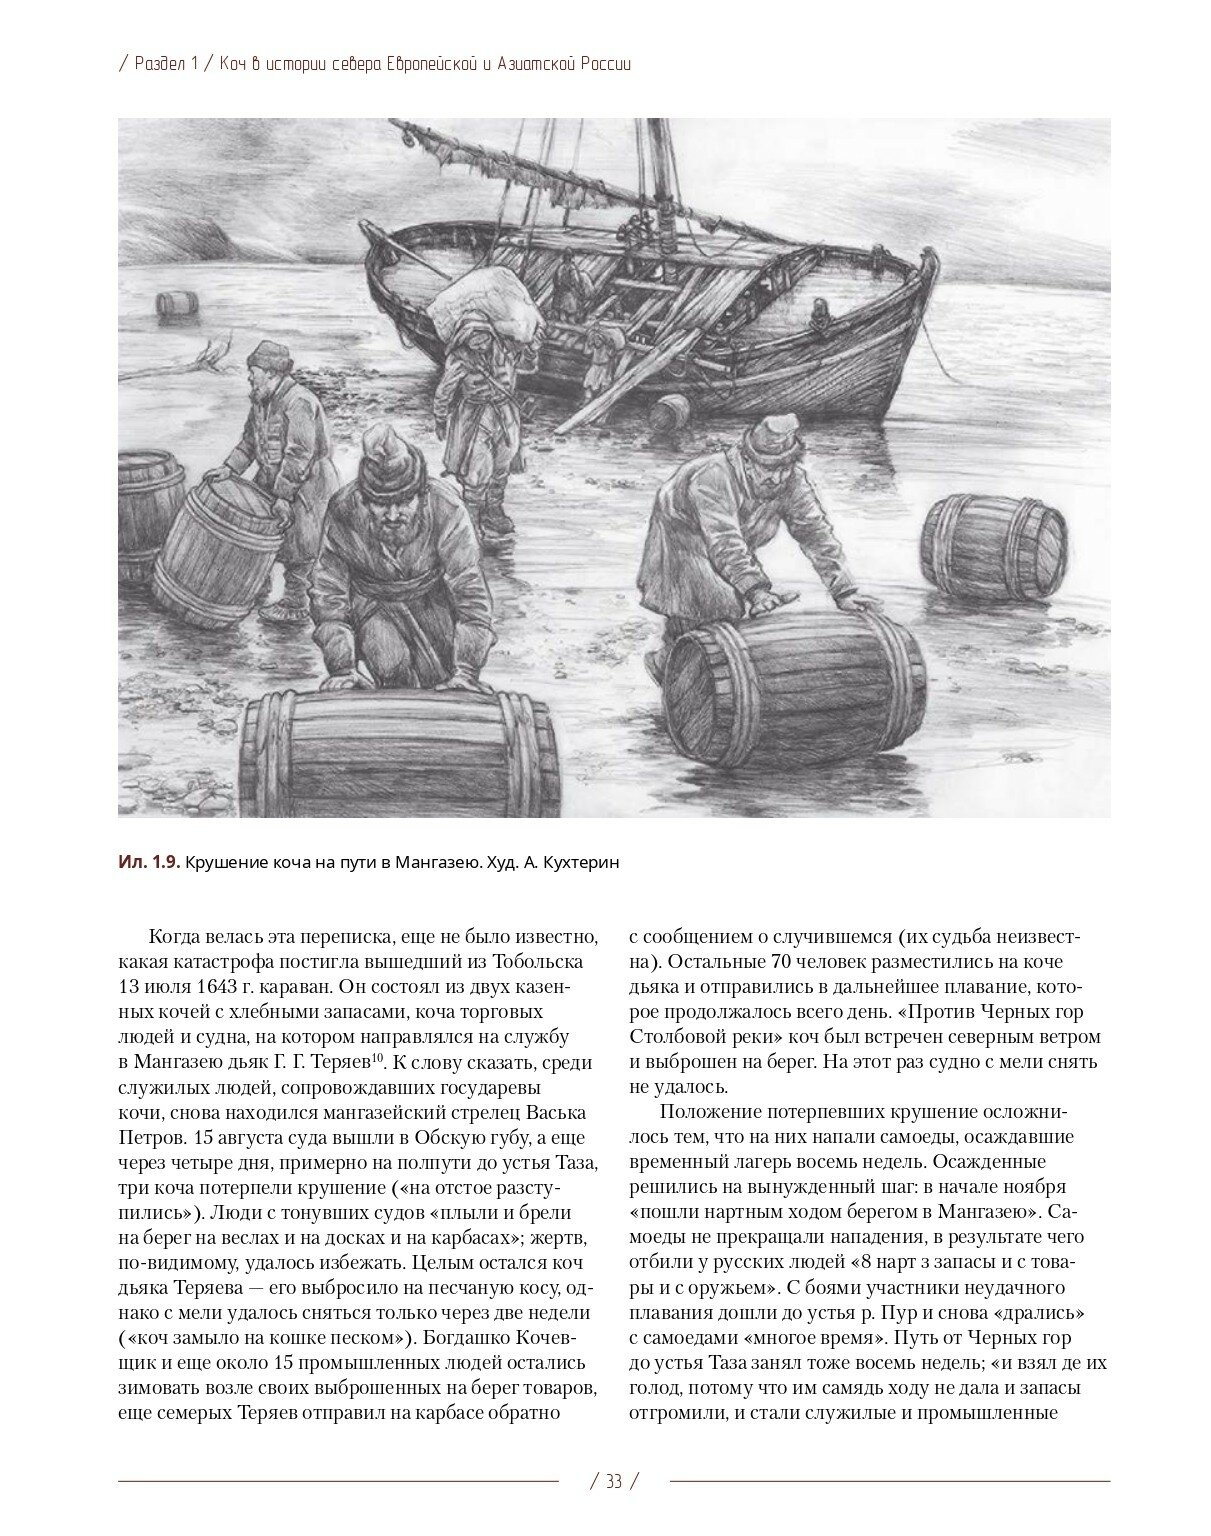 Коч — судно полярных мореходов XVII века. Новые данные - фото №5